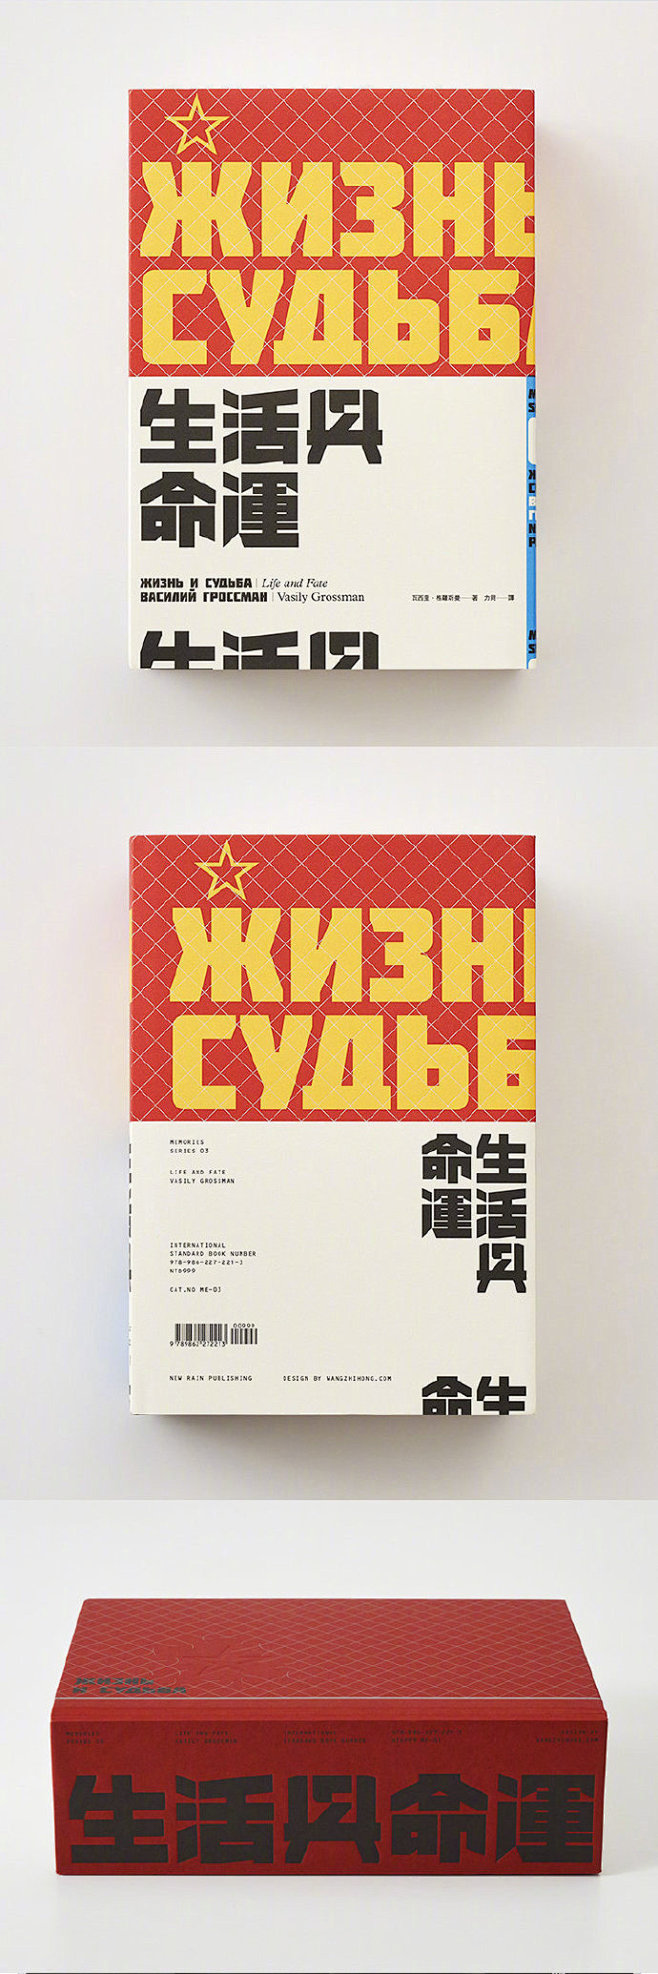 王志弘的书籍设计 来自中国设计品牌中心 ...